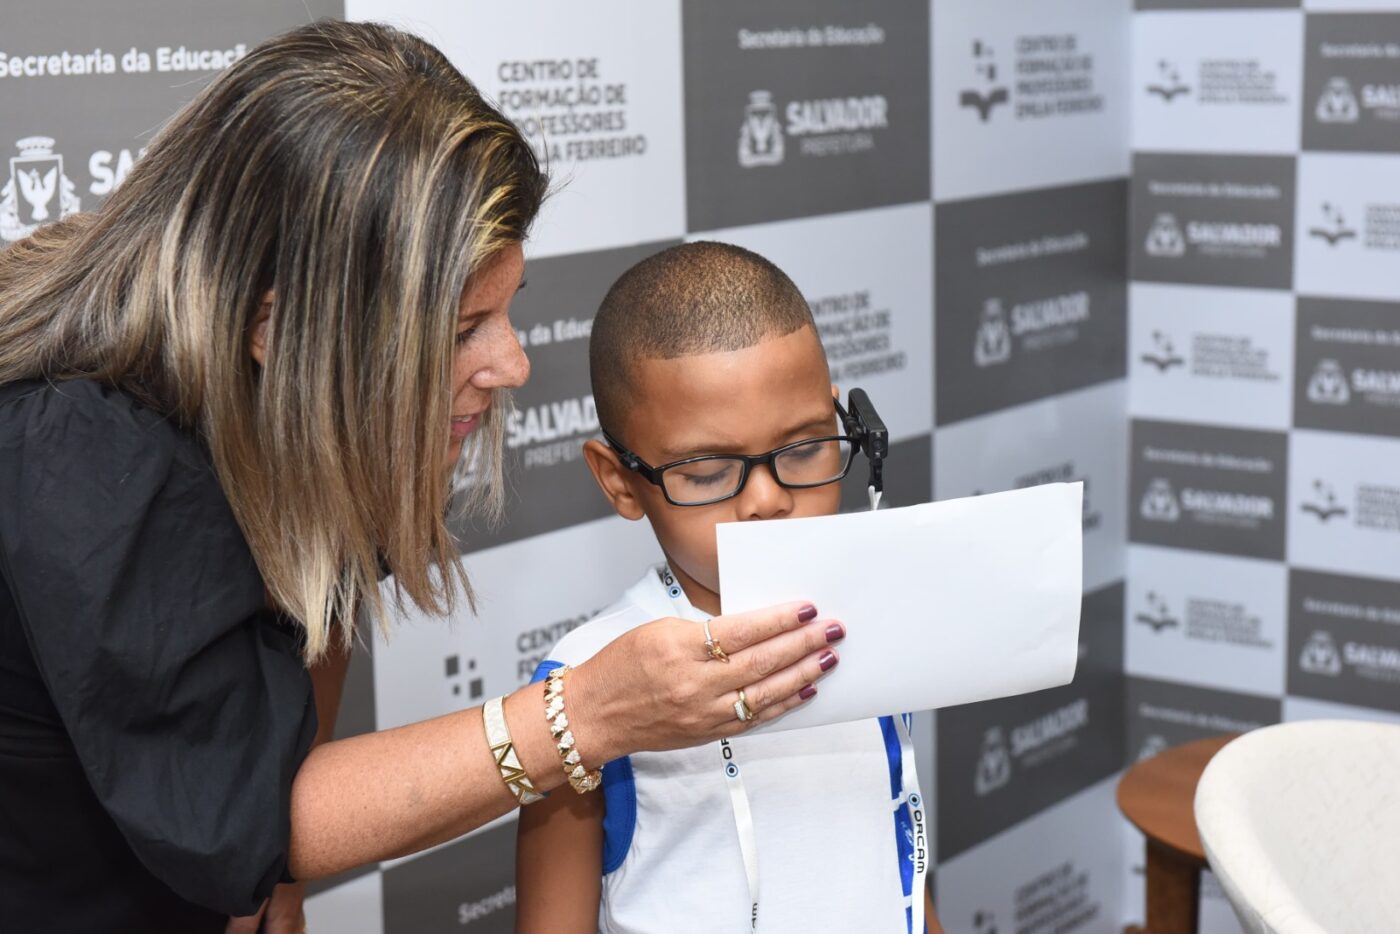 Instituto dos Cegos da Bahia e alunos de escolas de Salvador recebem 100 óculos com tecnologia assistiva; confira